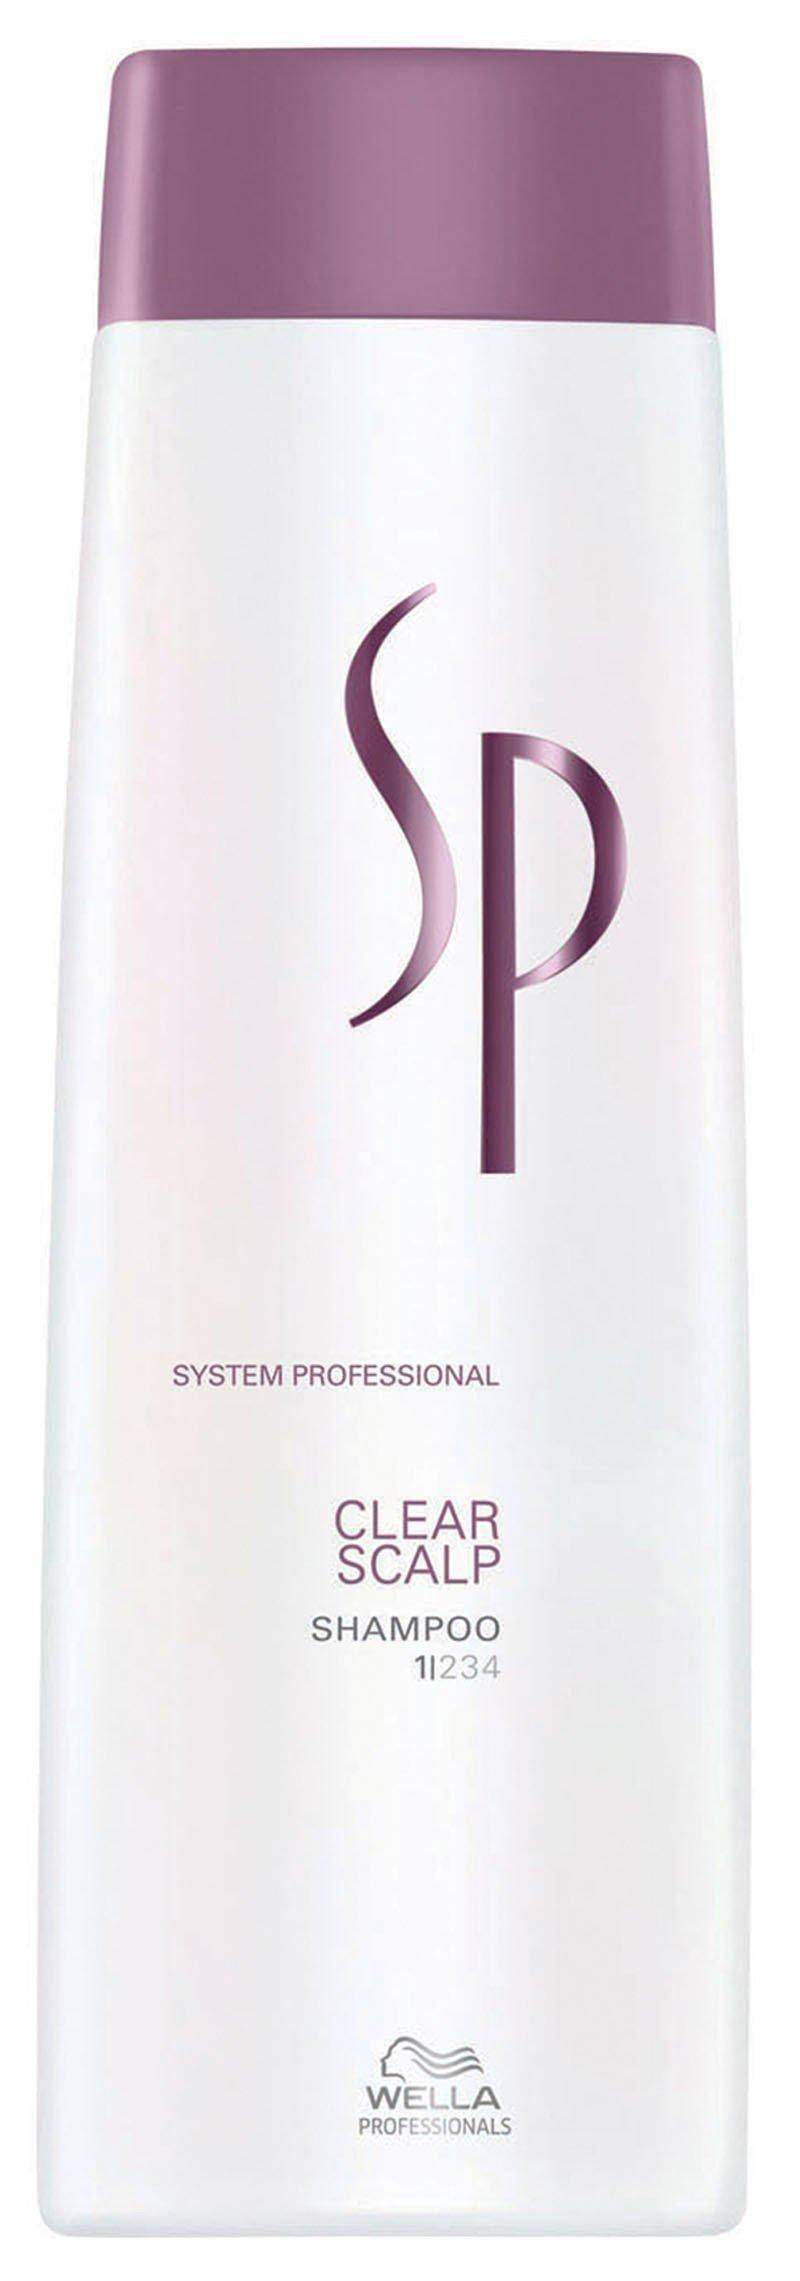 Clear Scalp Shampoo Damen  250ml von wella